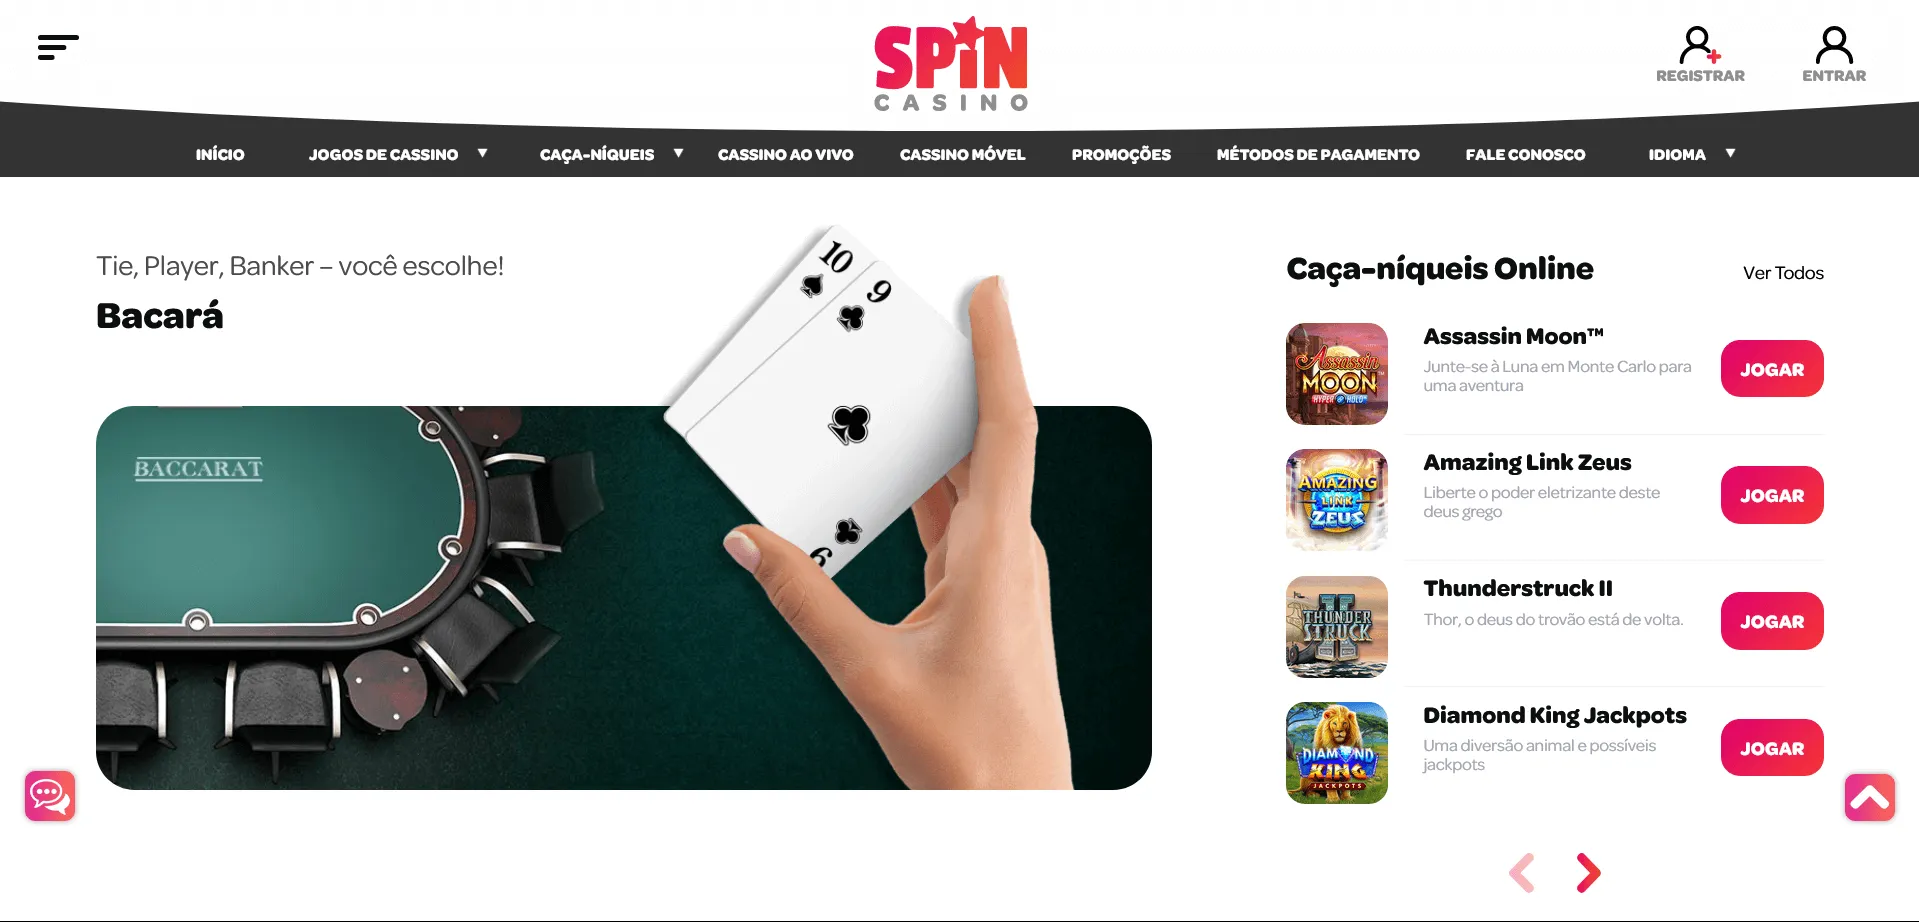 Bônus de boas-vindas e promoções no Spin Casino